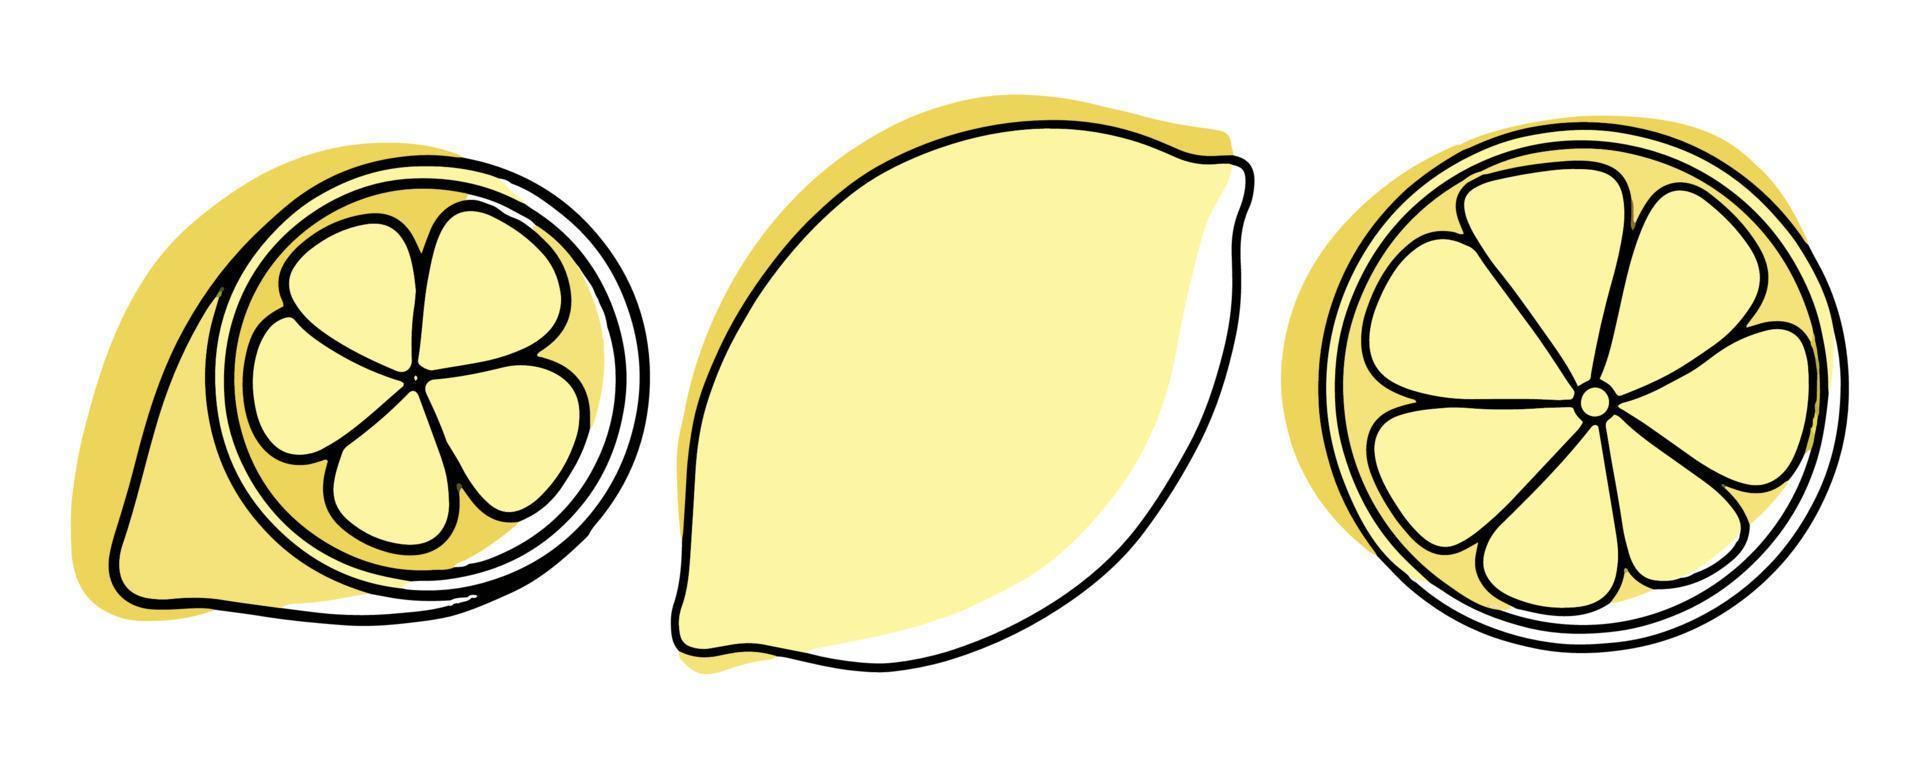 un insieme di frutti tropicali estivi. raccolta di limoni di frutta esotica. intero e fette di frutta. illustrazione vettoriale in stile lineare con macchie colorate